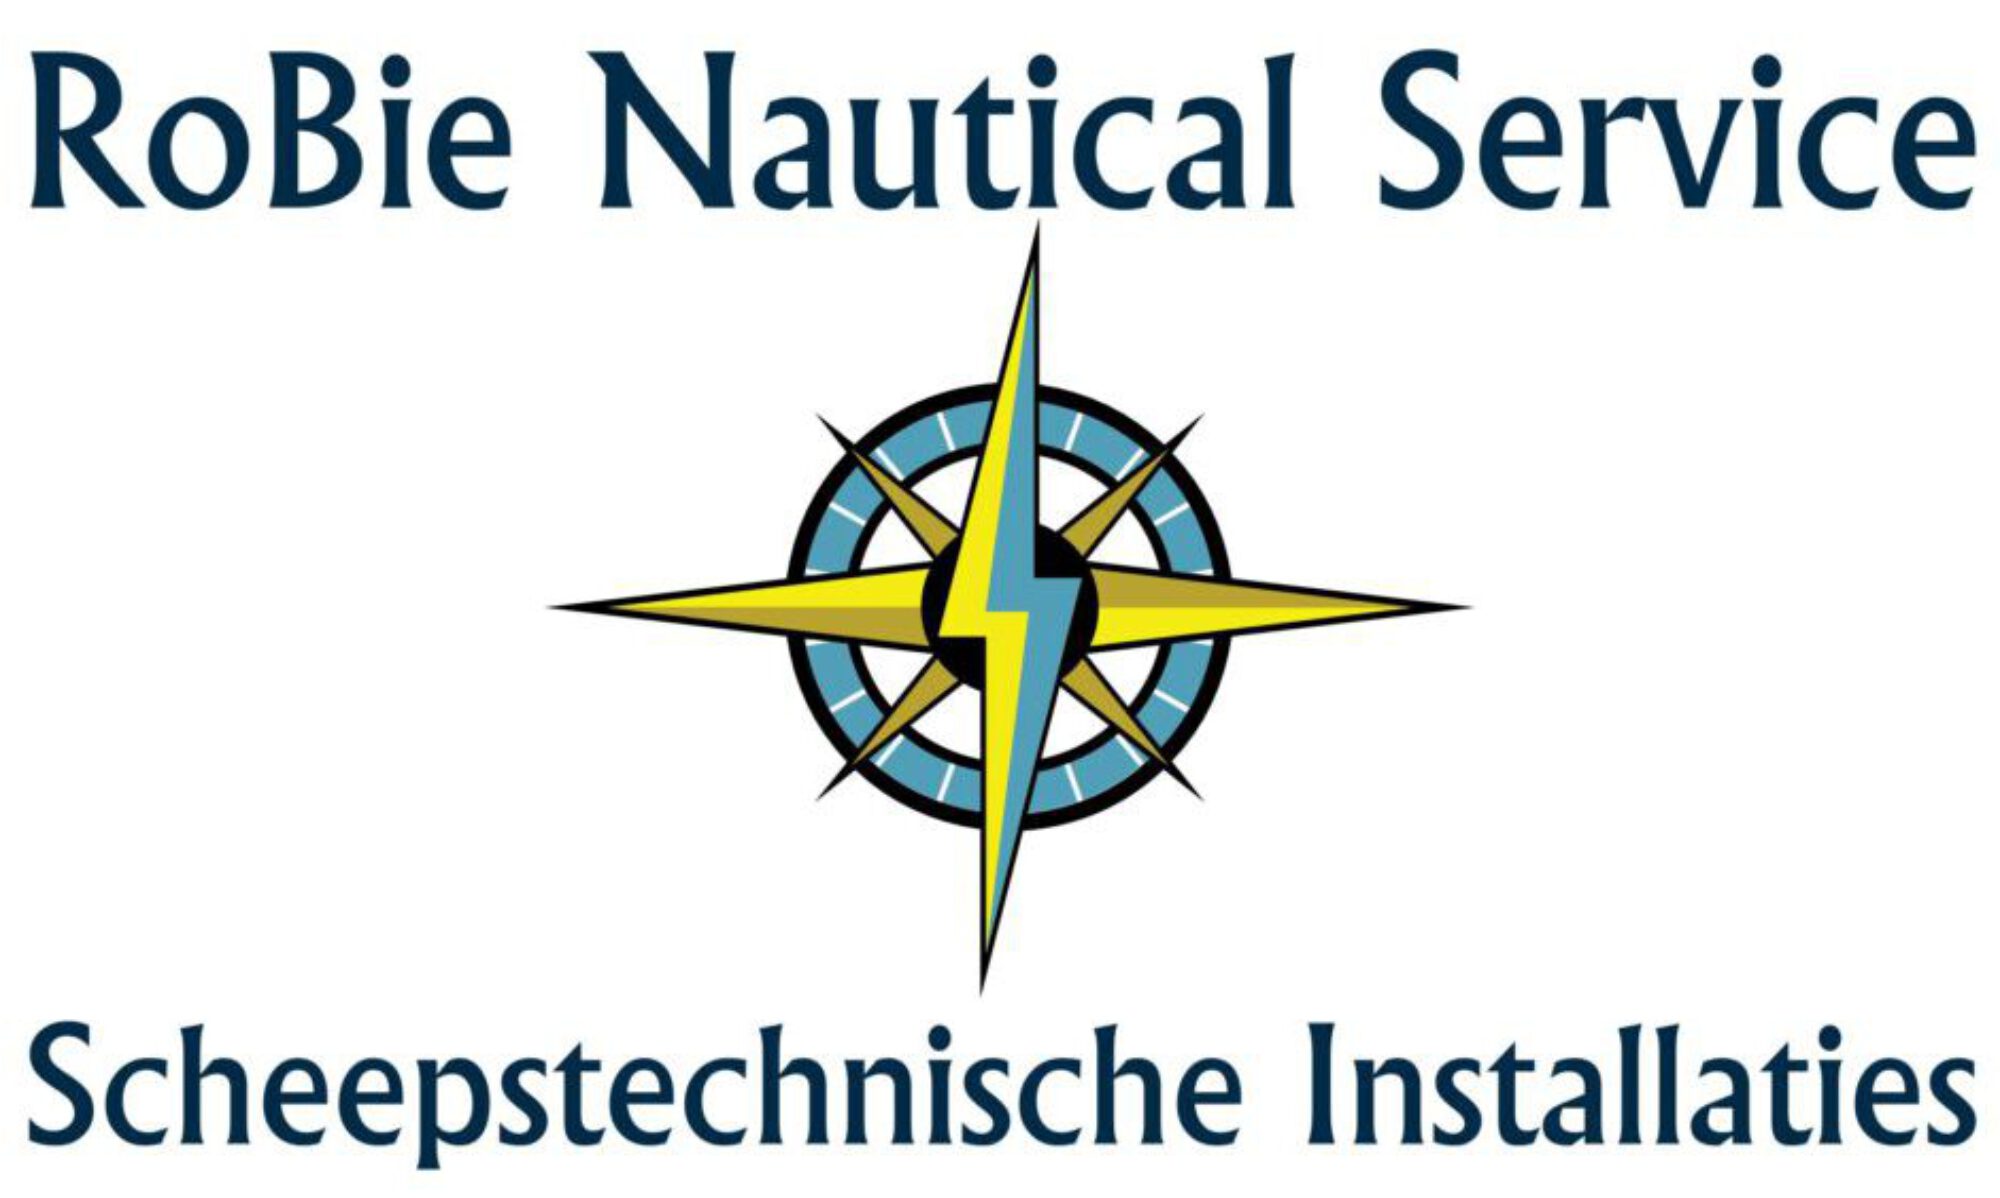 RoBie Nautical Service